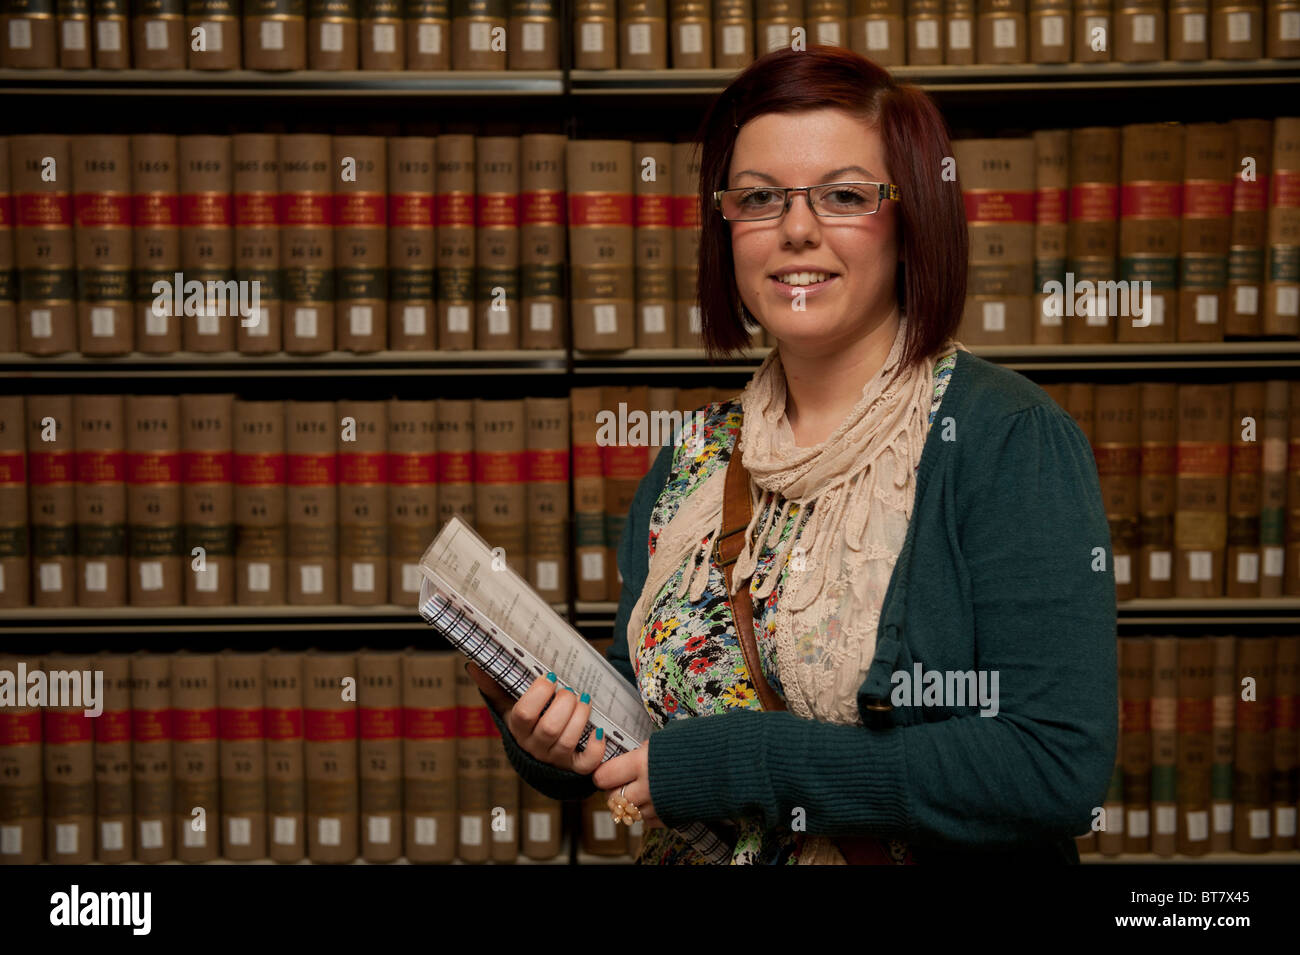 Une première année de premier cycle féminin étudiante en droit à la bibliothèque de l'Université d'Aberystwyth, Pays de Galles, Royaume-Uni Banque D'Images